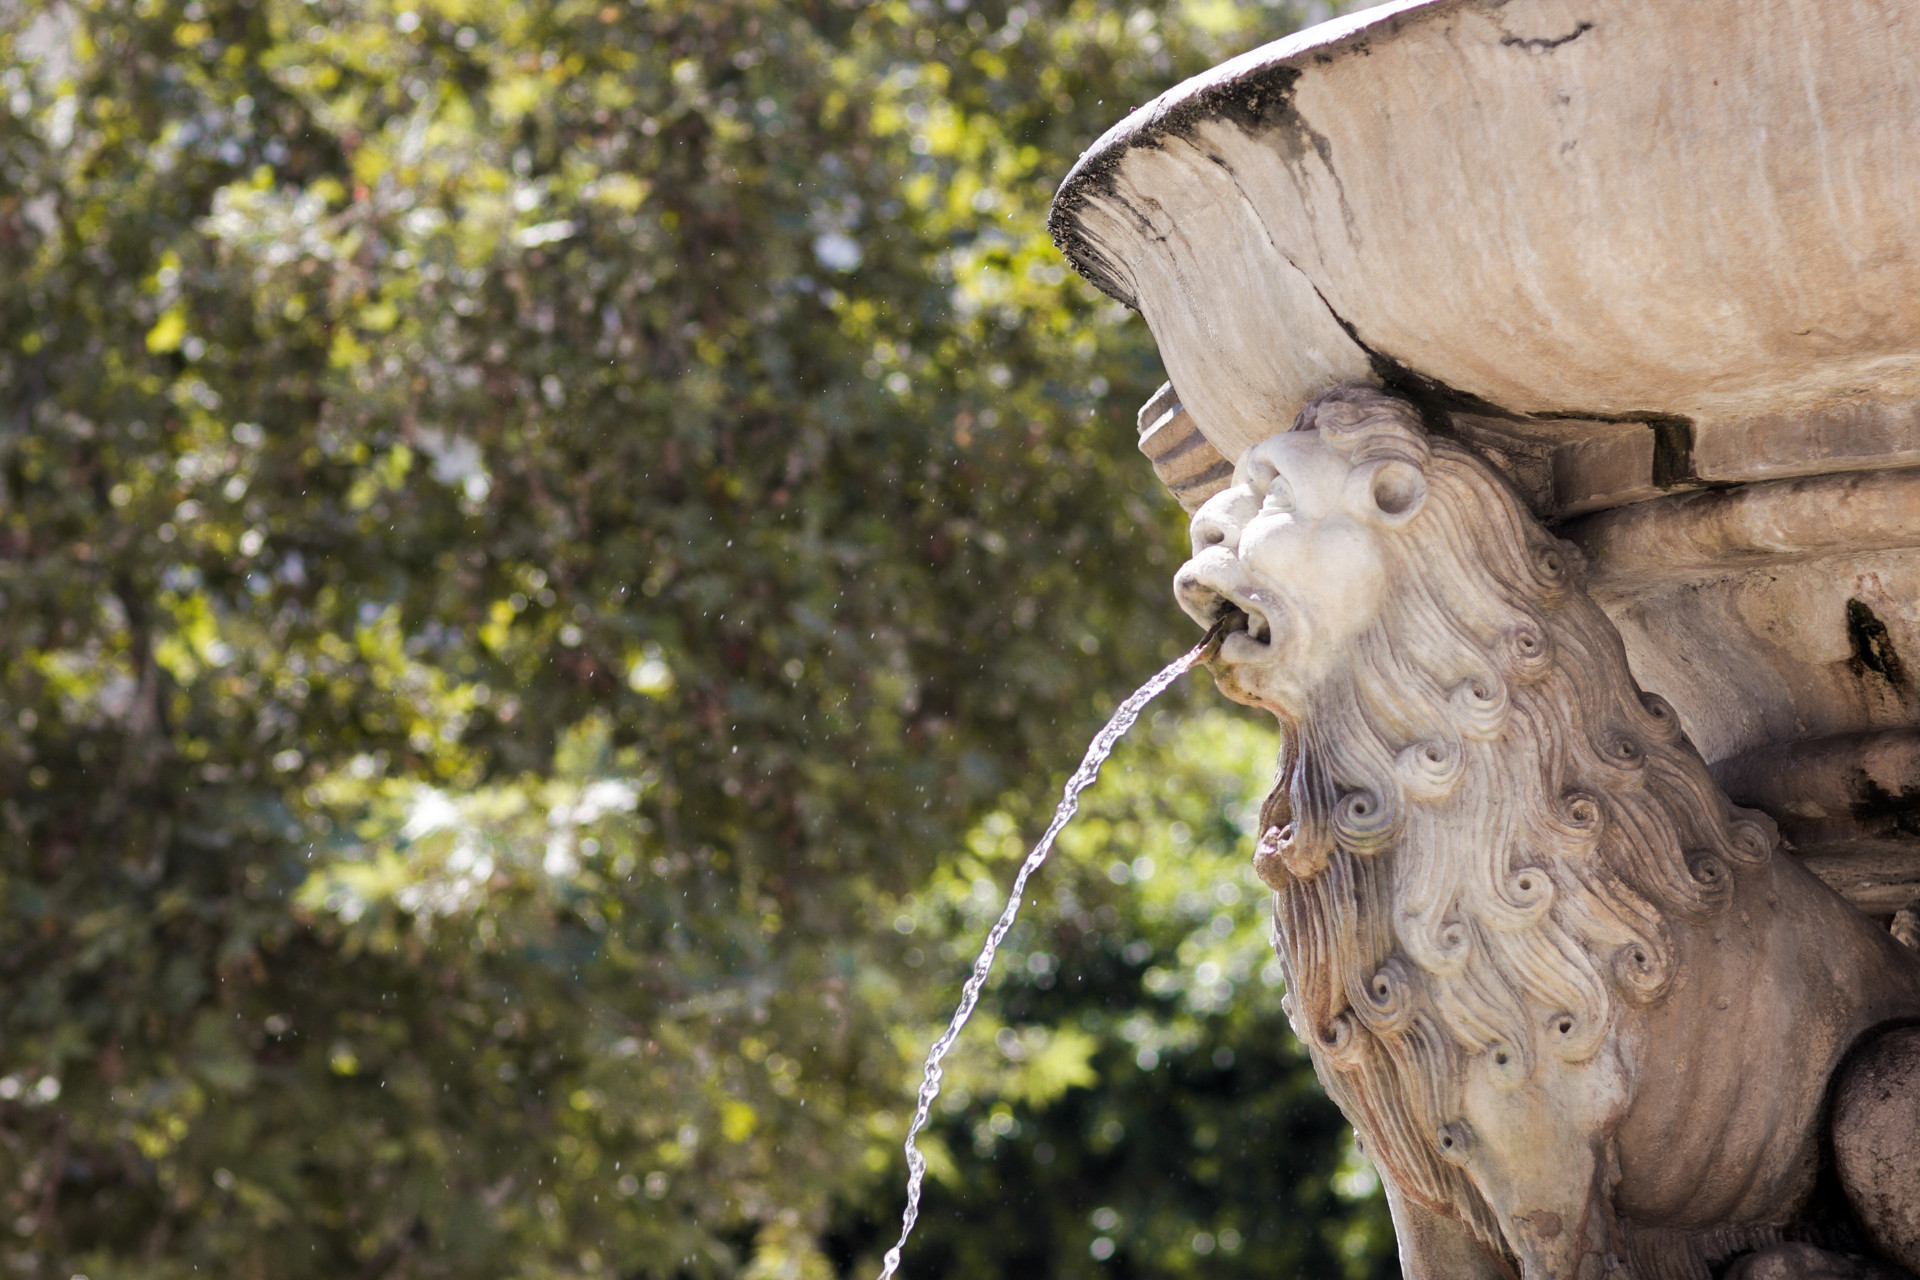 The Morosini Fountain in Lions Square in Heraklion